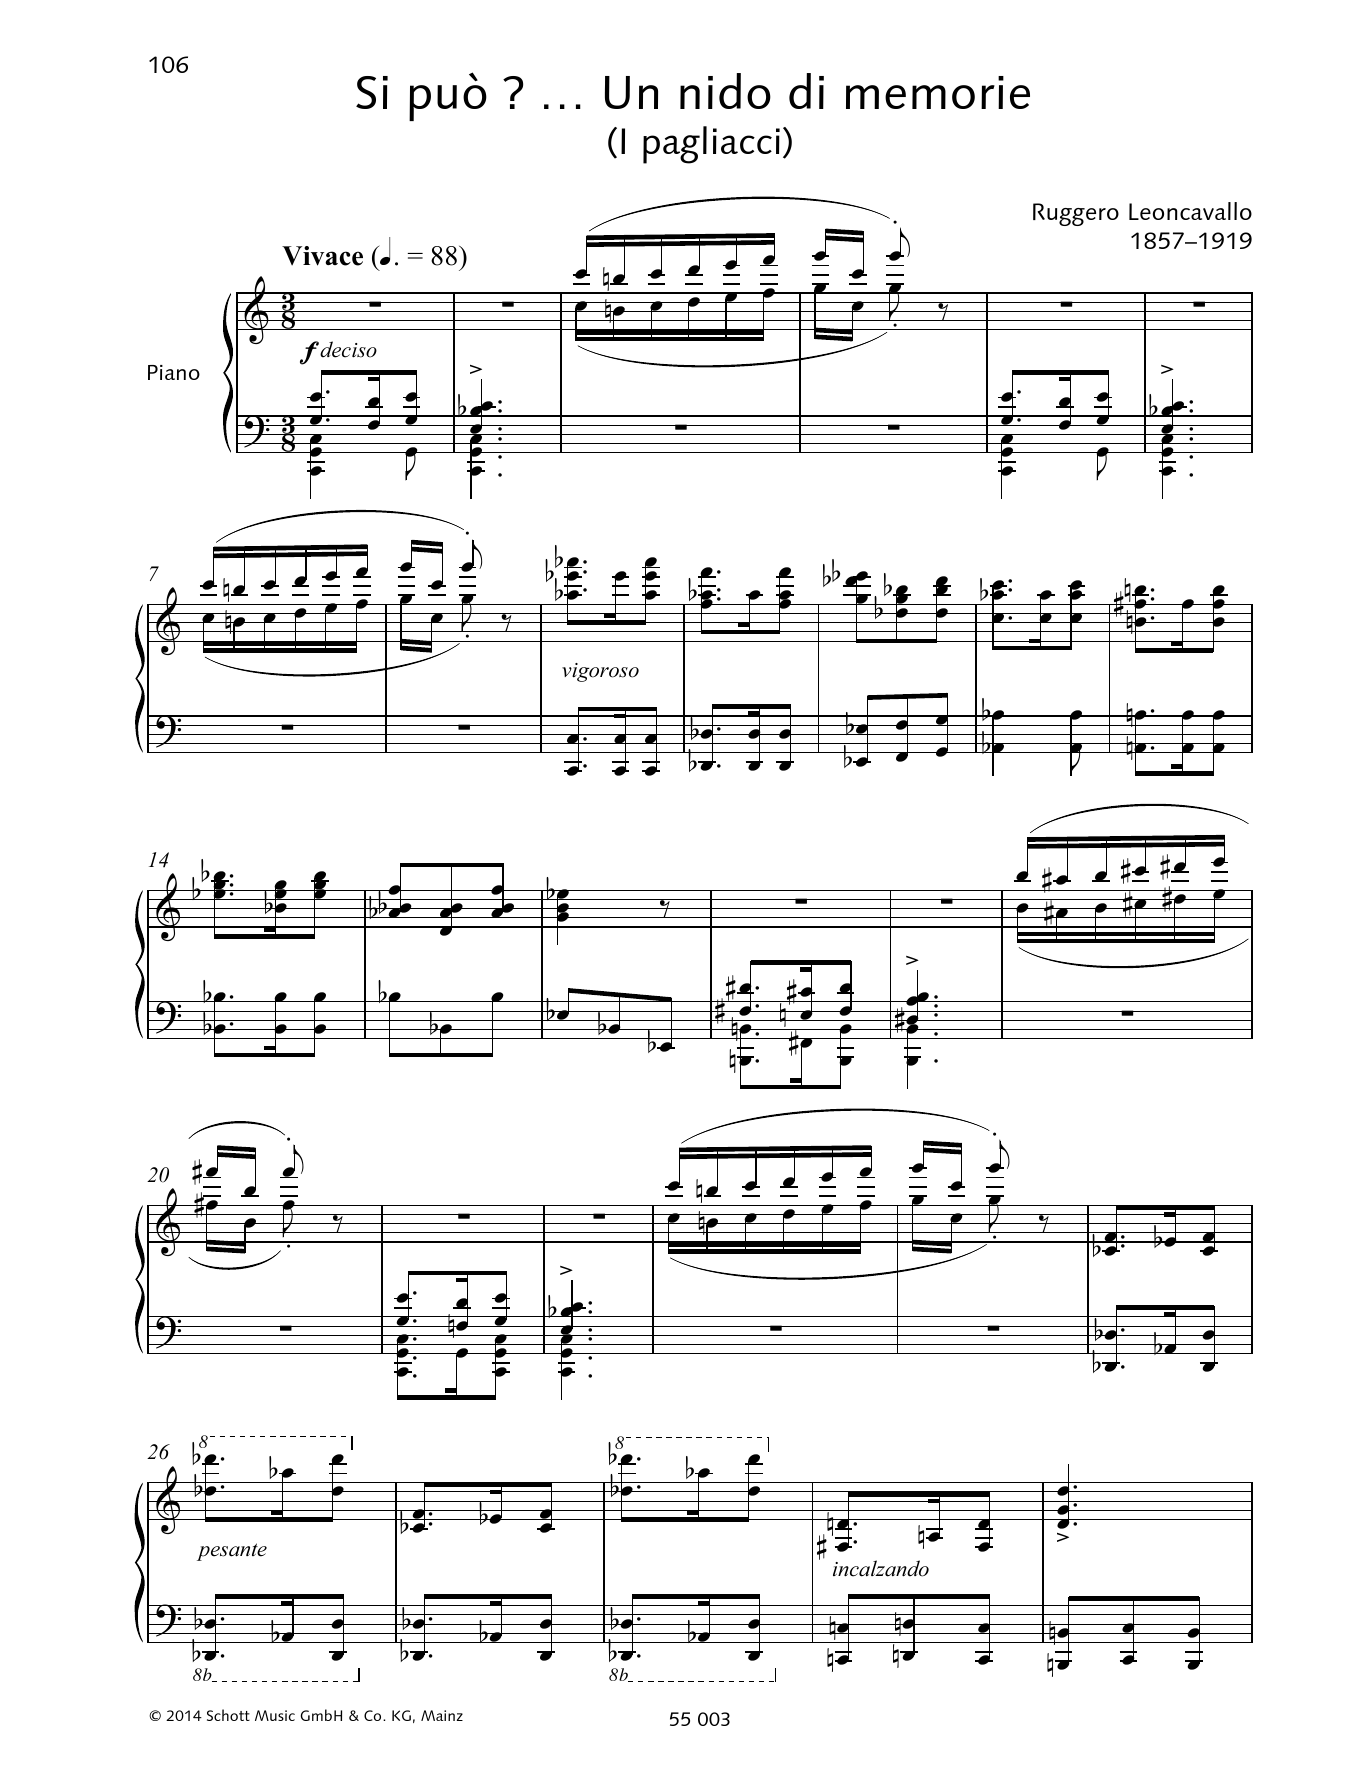 Ruggiero Leoncavallo Si può? ... Un nido di memorie Sheet Music Notes & Chords for Piano & Vocal - Download or Print PDF